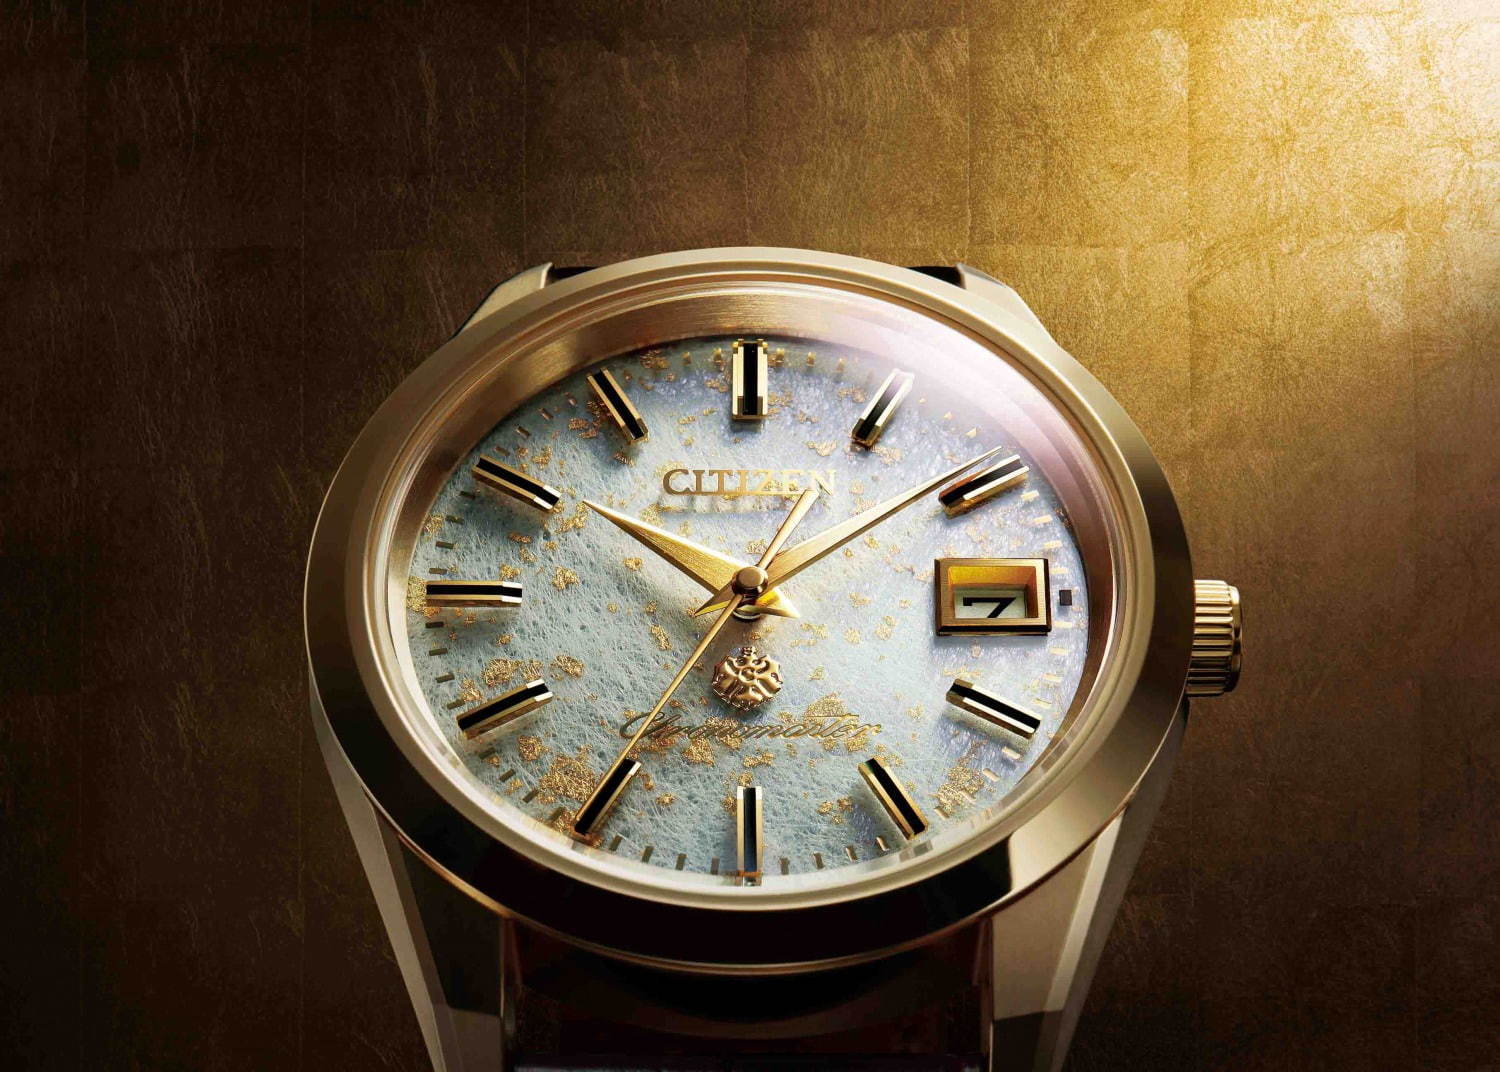 ザ シチズン から金沢金箔を施した 土佐和紙 文字板の限定腕時計 生誕25周年記念モデル ファッションプレス